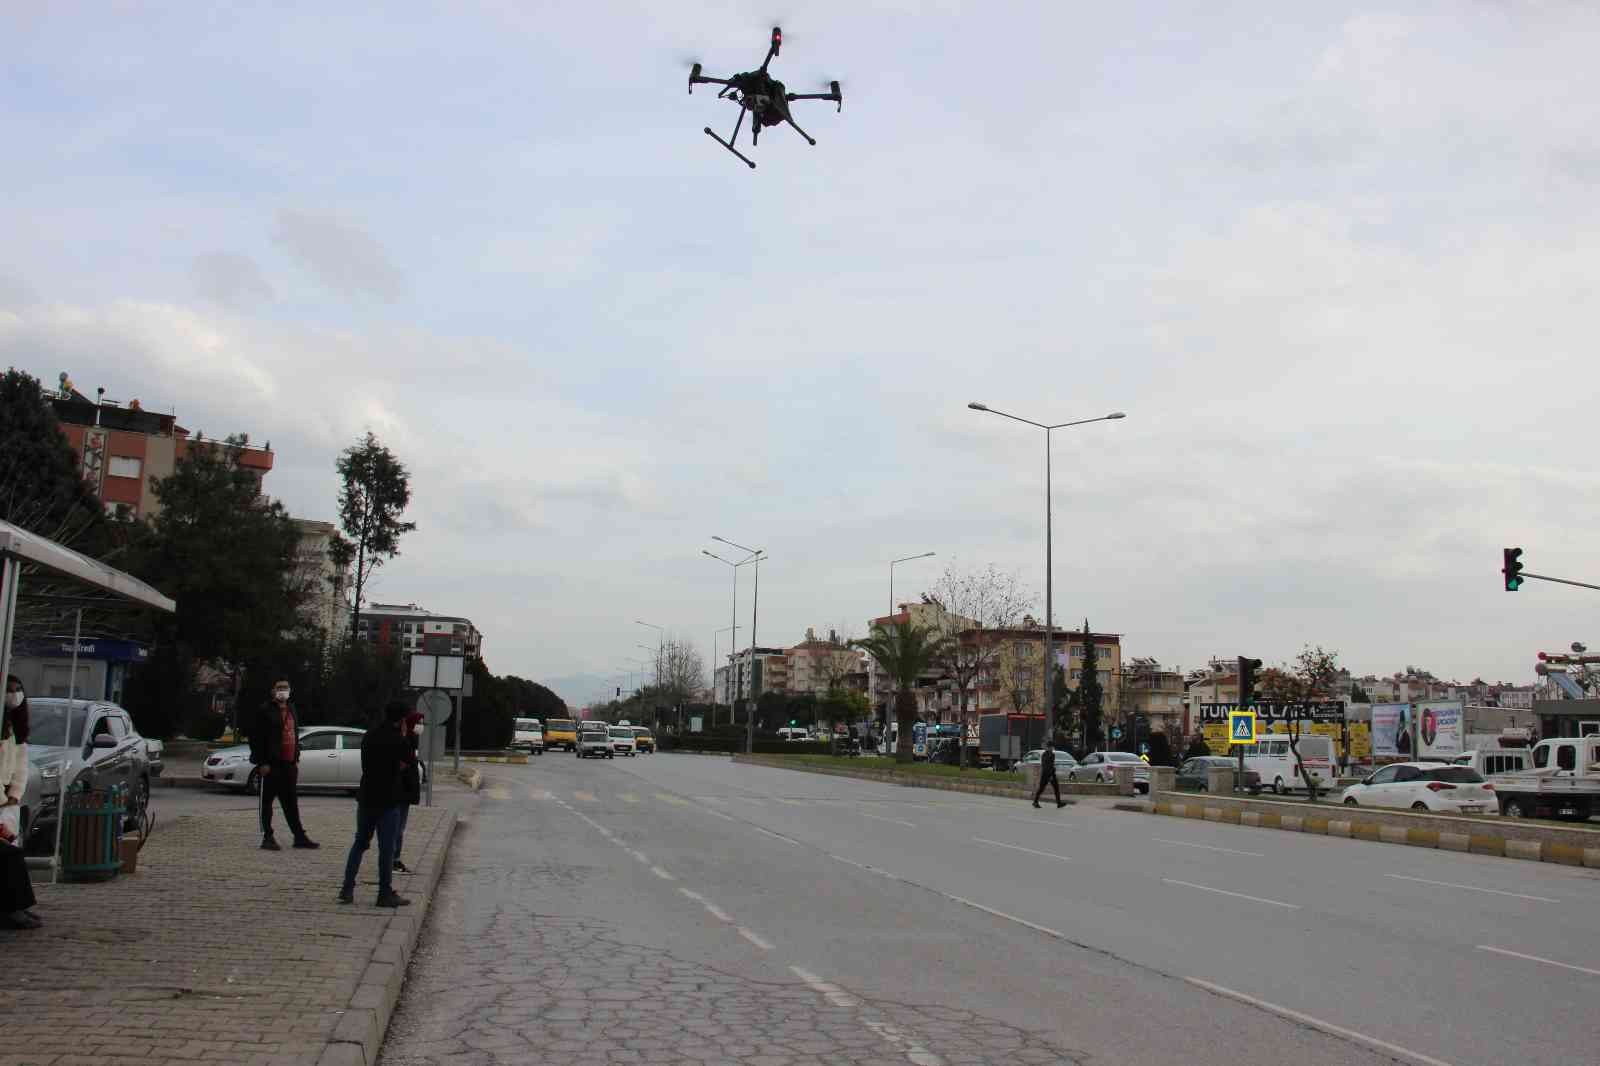 Aydın’da suçlular drone denetimlerinden kaçamıyor #aydin